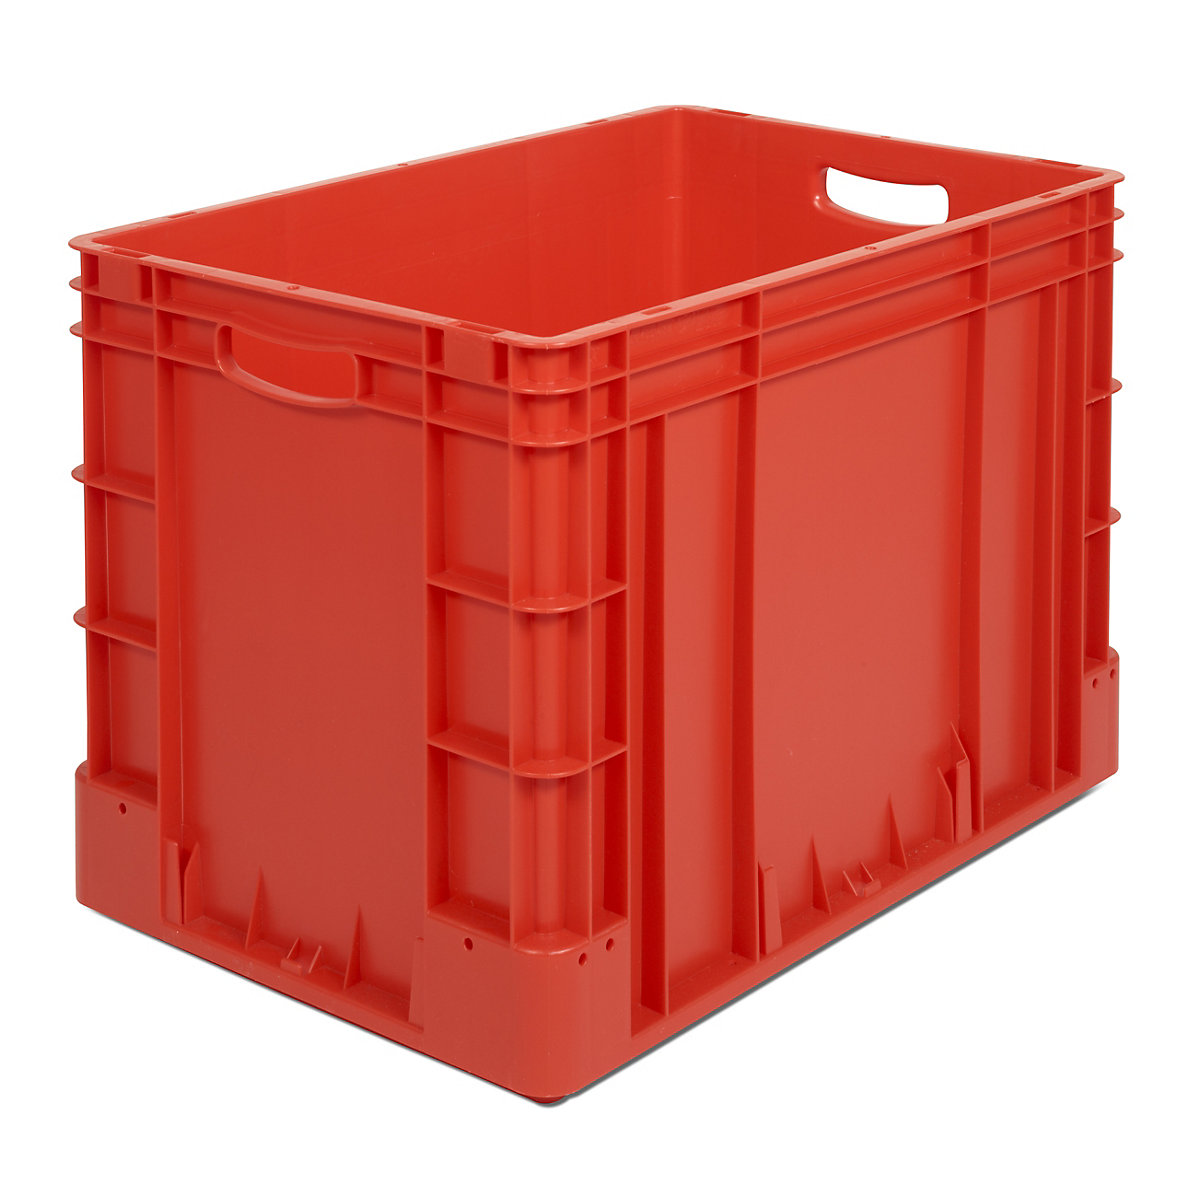 Industrijski spremnik, volumen 80 l, DxŠxV 600 x 400 x 420 mm, pak. 2 kom., u crvenoj boji